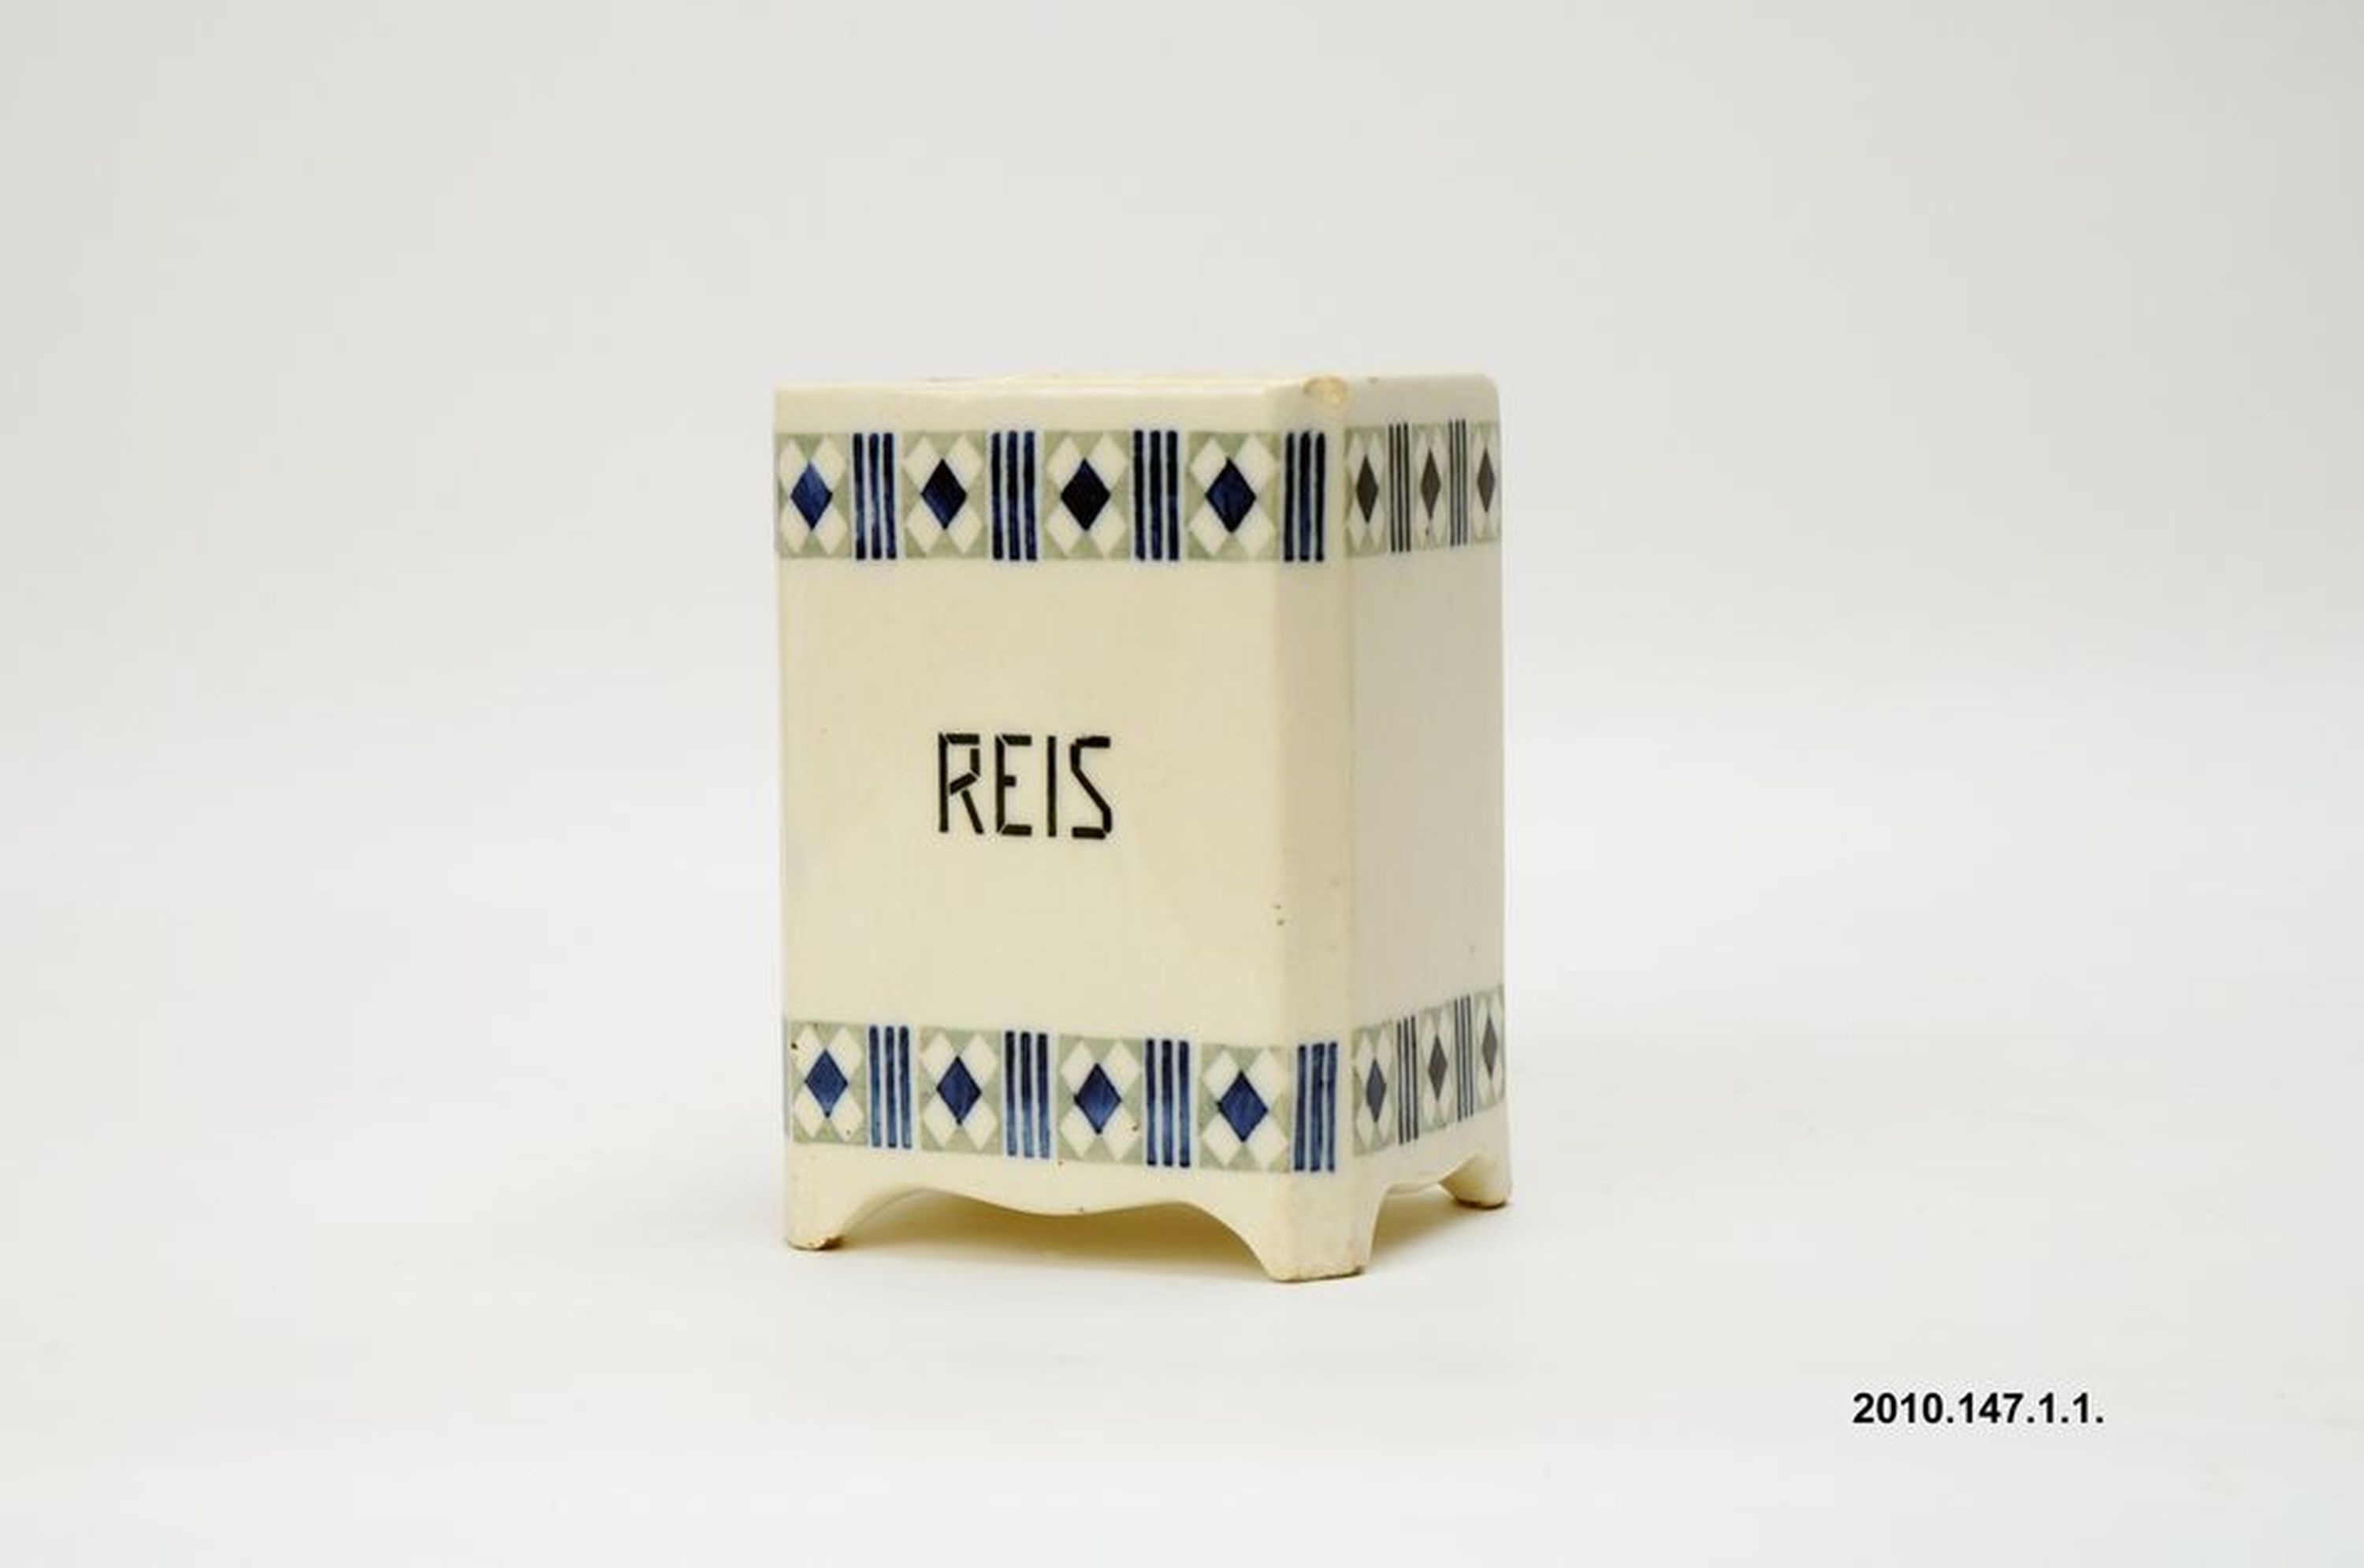 Kerámia fűszertartó "Reis" felirattal (Óbudai Múzeum CC BY-NC-SA)